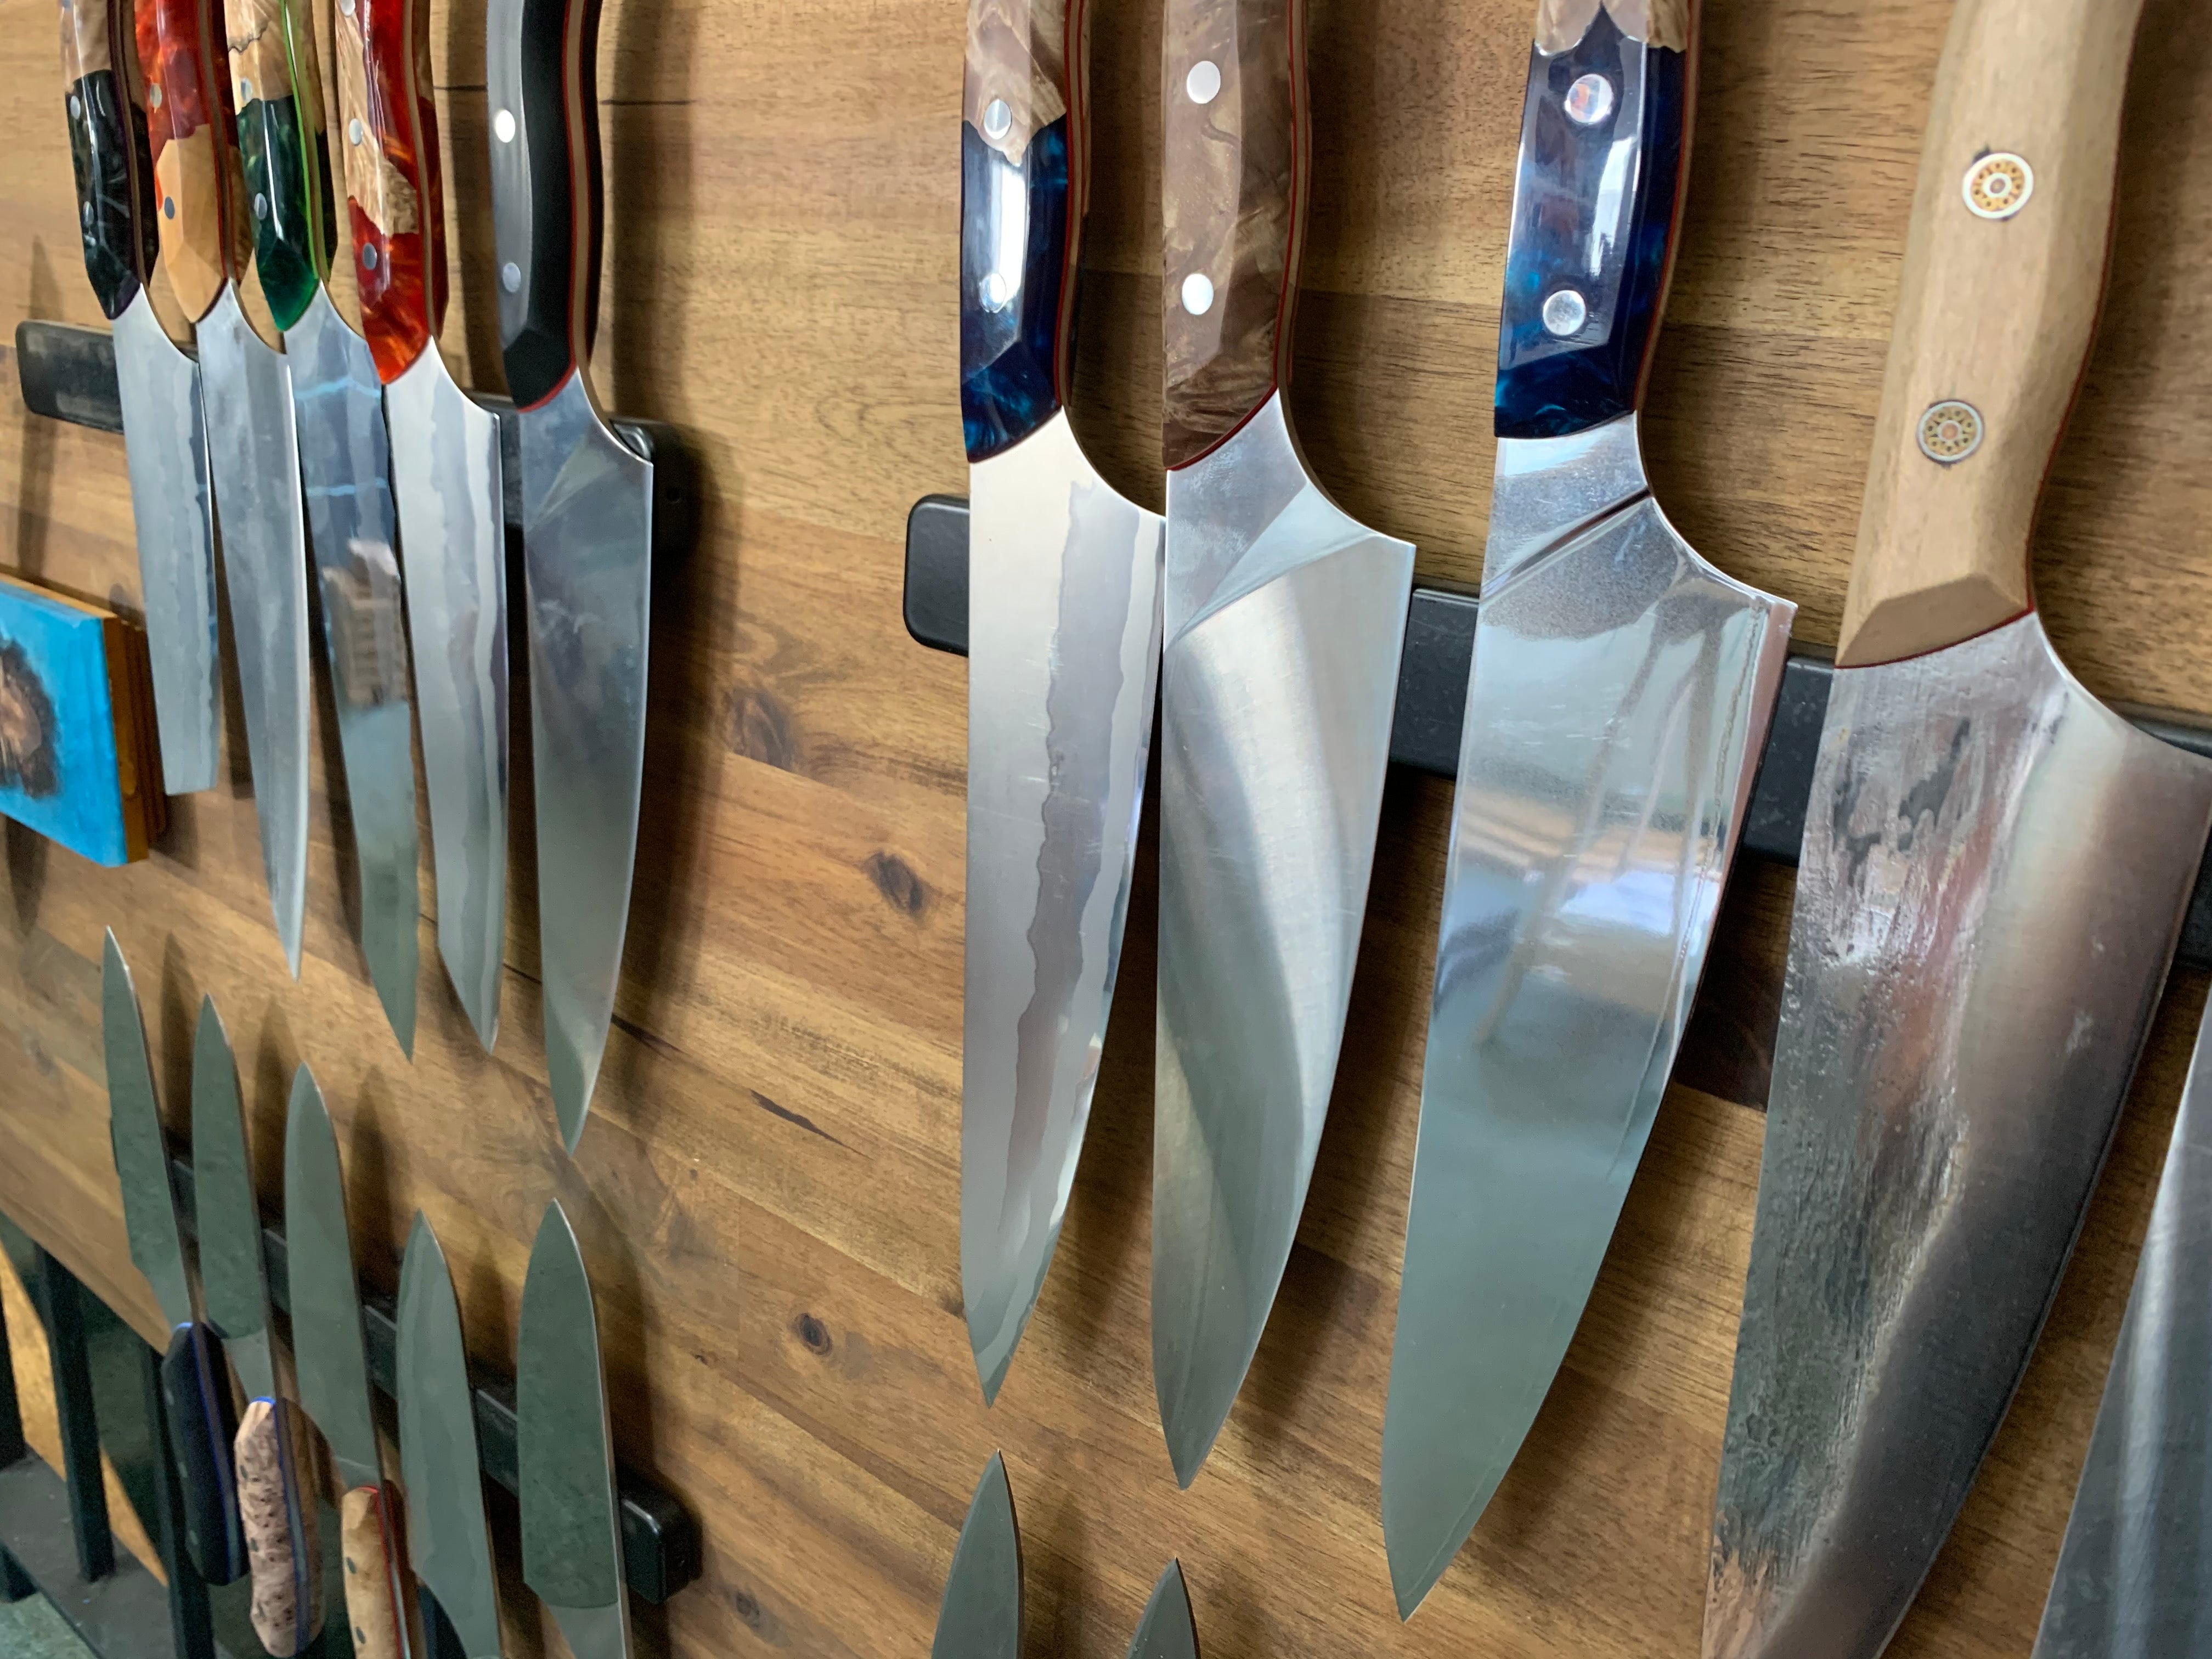 Rare Slicer Knife Slice Cutter Multipurpose Knife Bread Slicer 